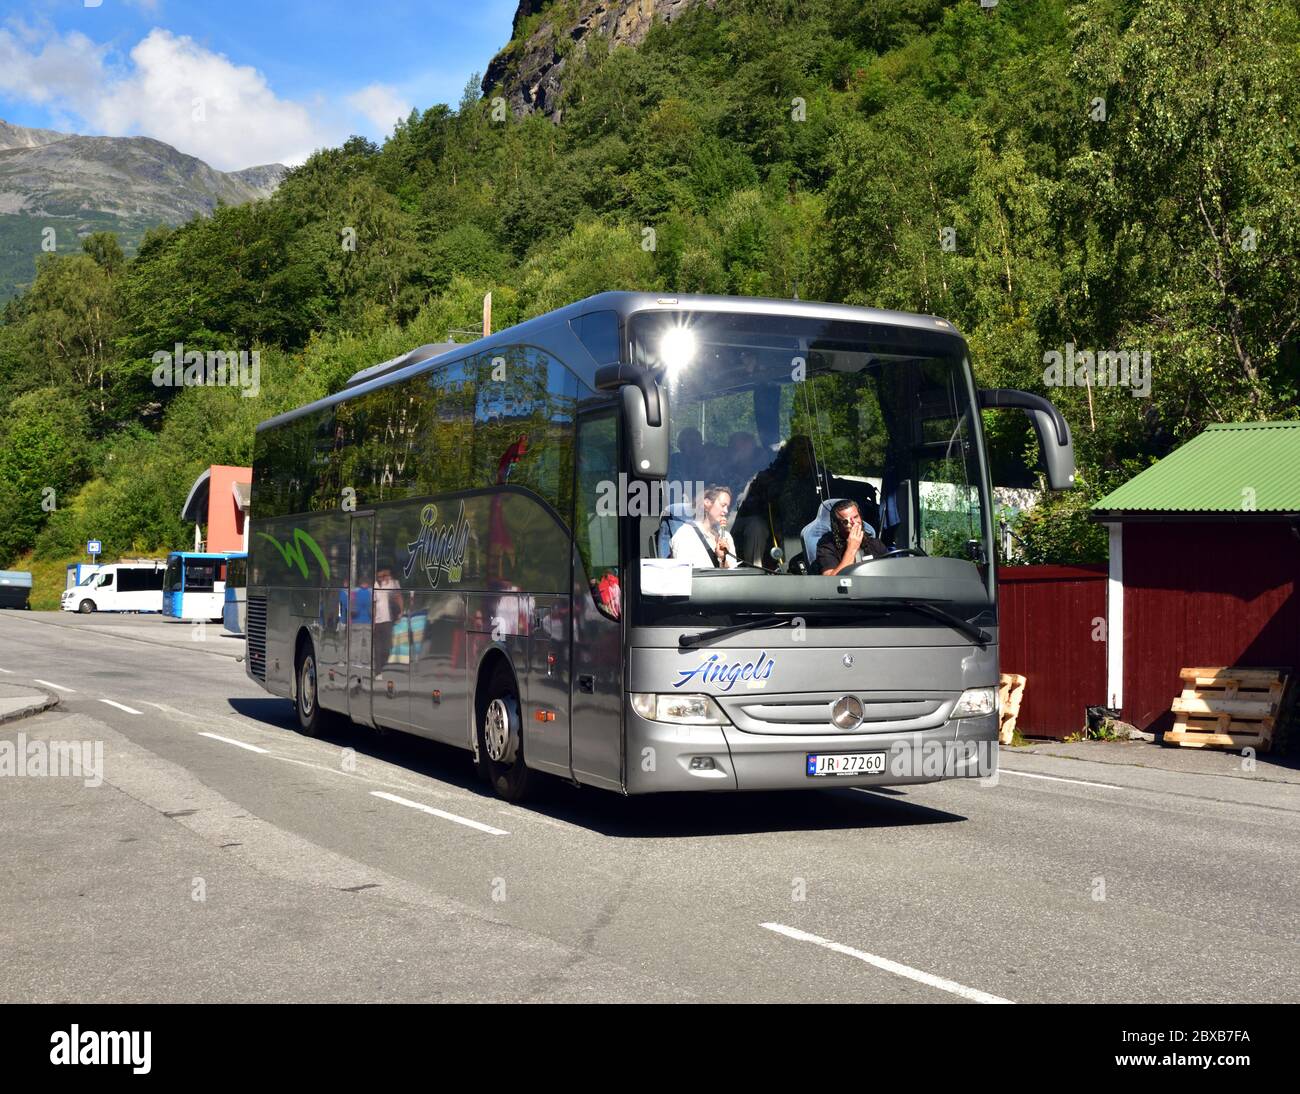 Mercedes tourismo immagini e fotografie stock ad alta risoluzione - Alamy